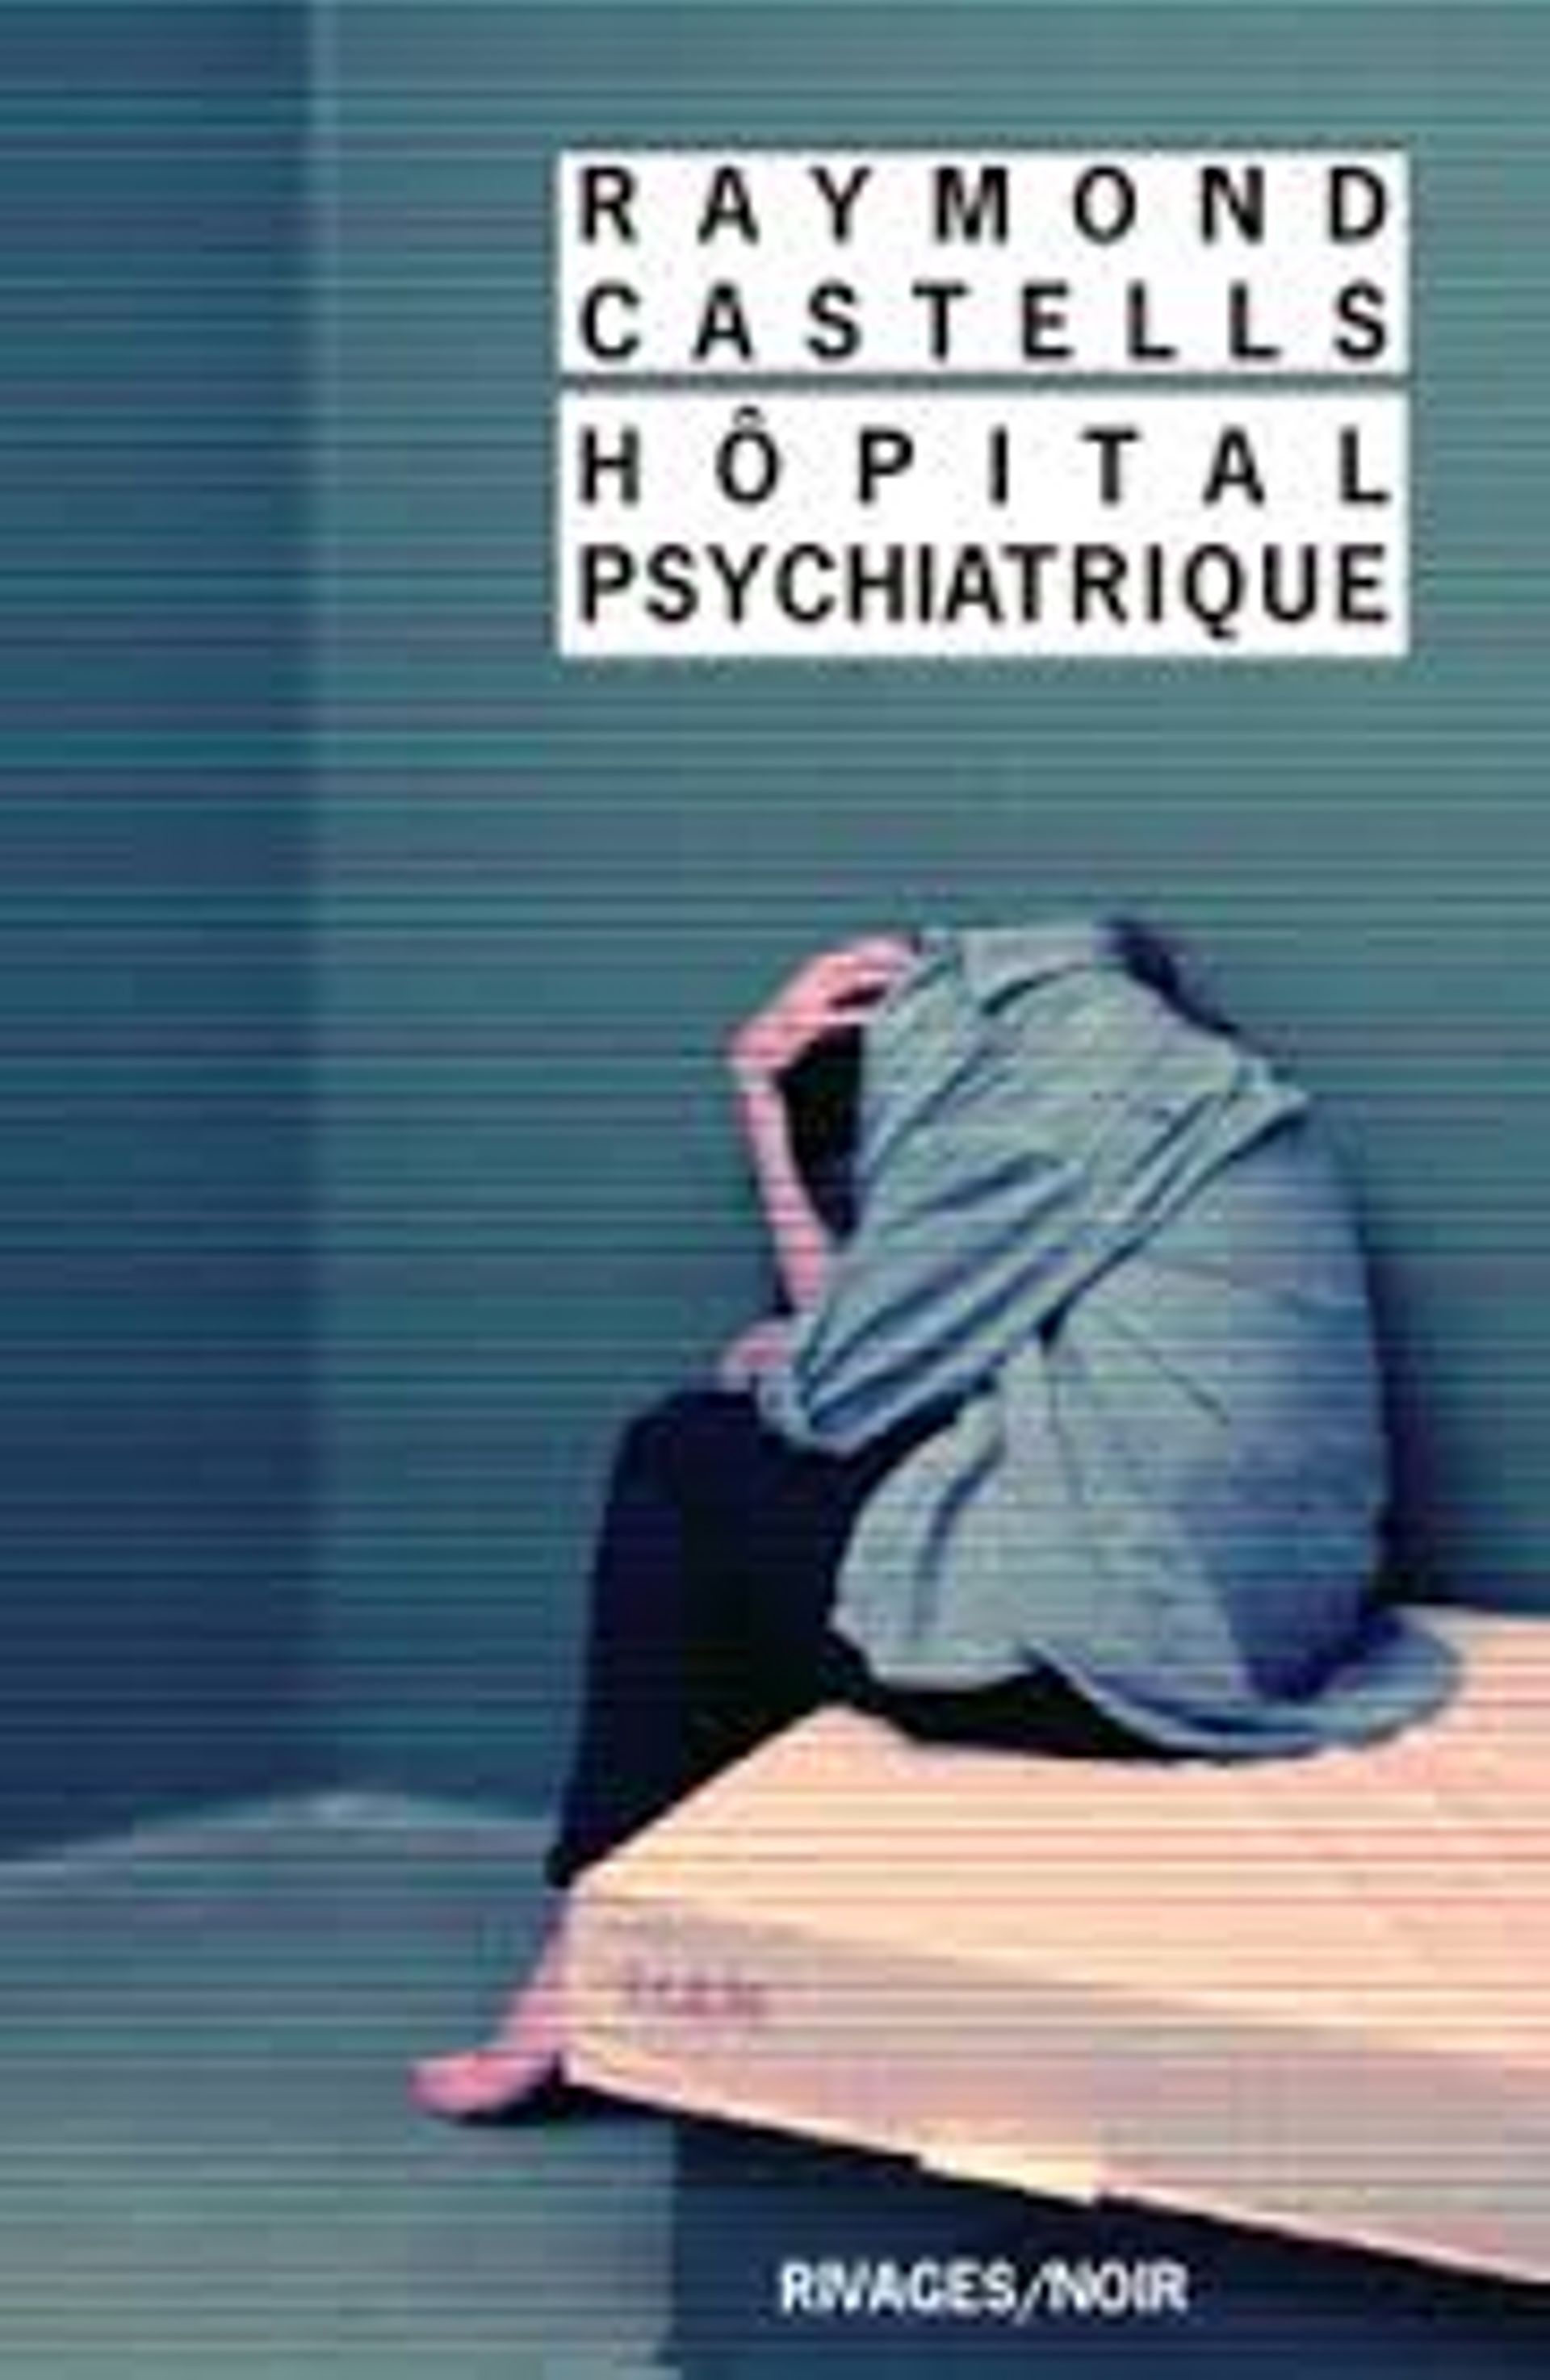 « Hôpital psychiatrique " de Raymond Castells - Ed Rivages / noir